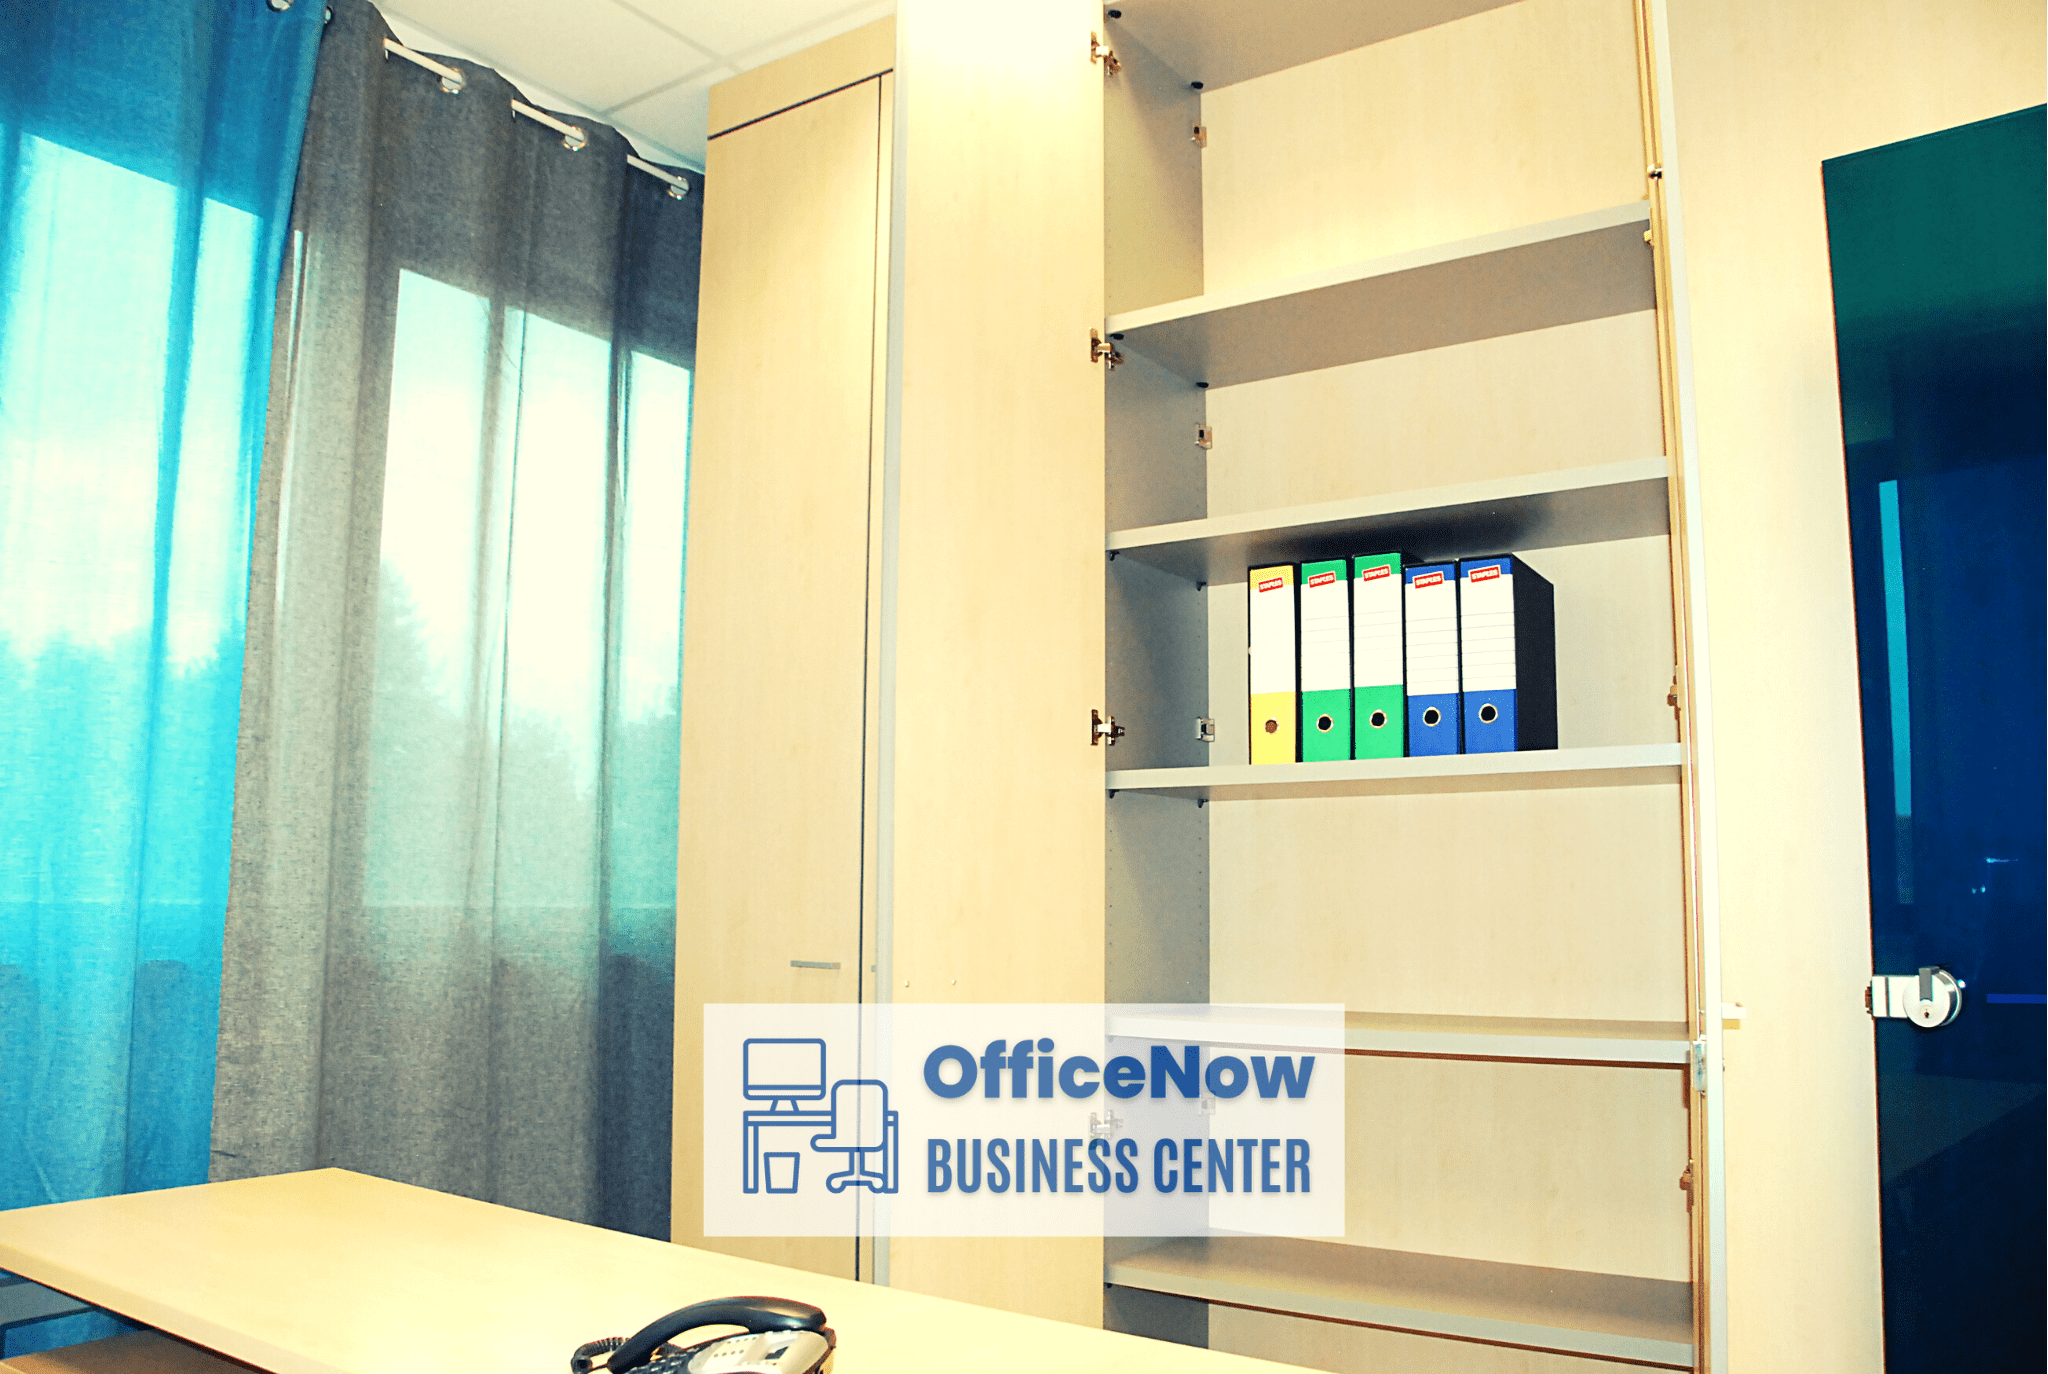 OfficeNow, ufficio in affitto a Malpensa, ufficio con ampia libreria, perfetto per lavorare da remoto in tranquillità